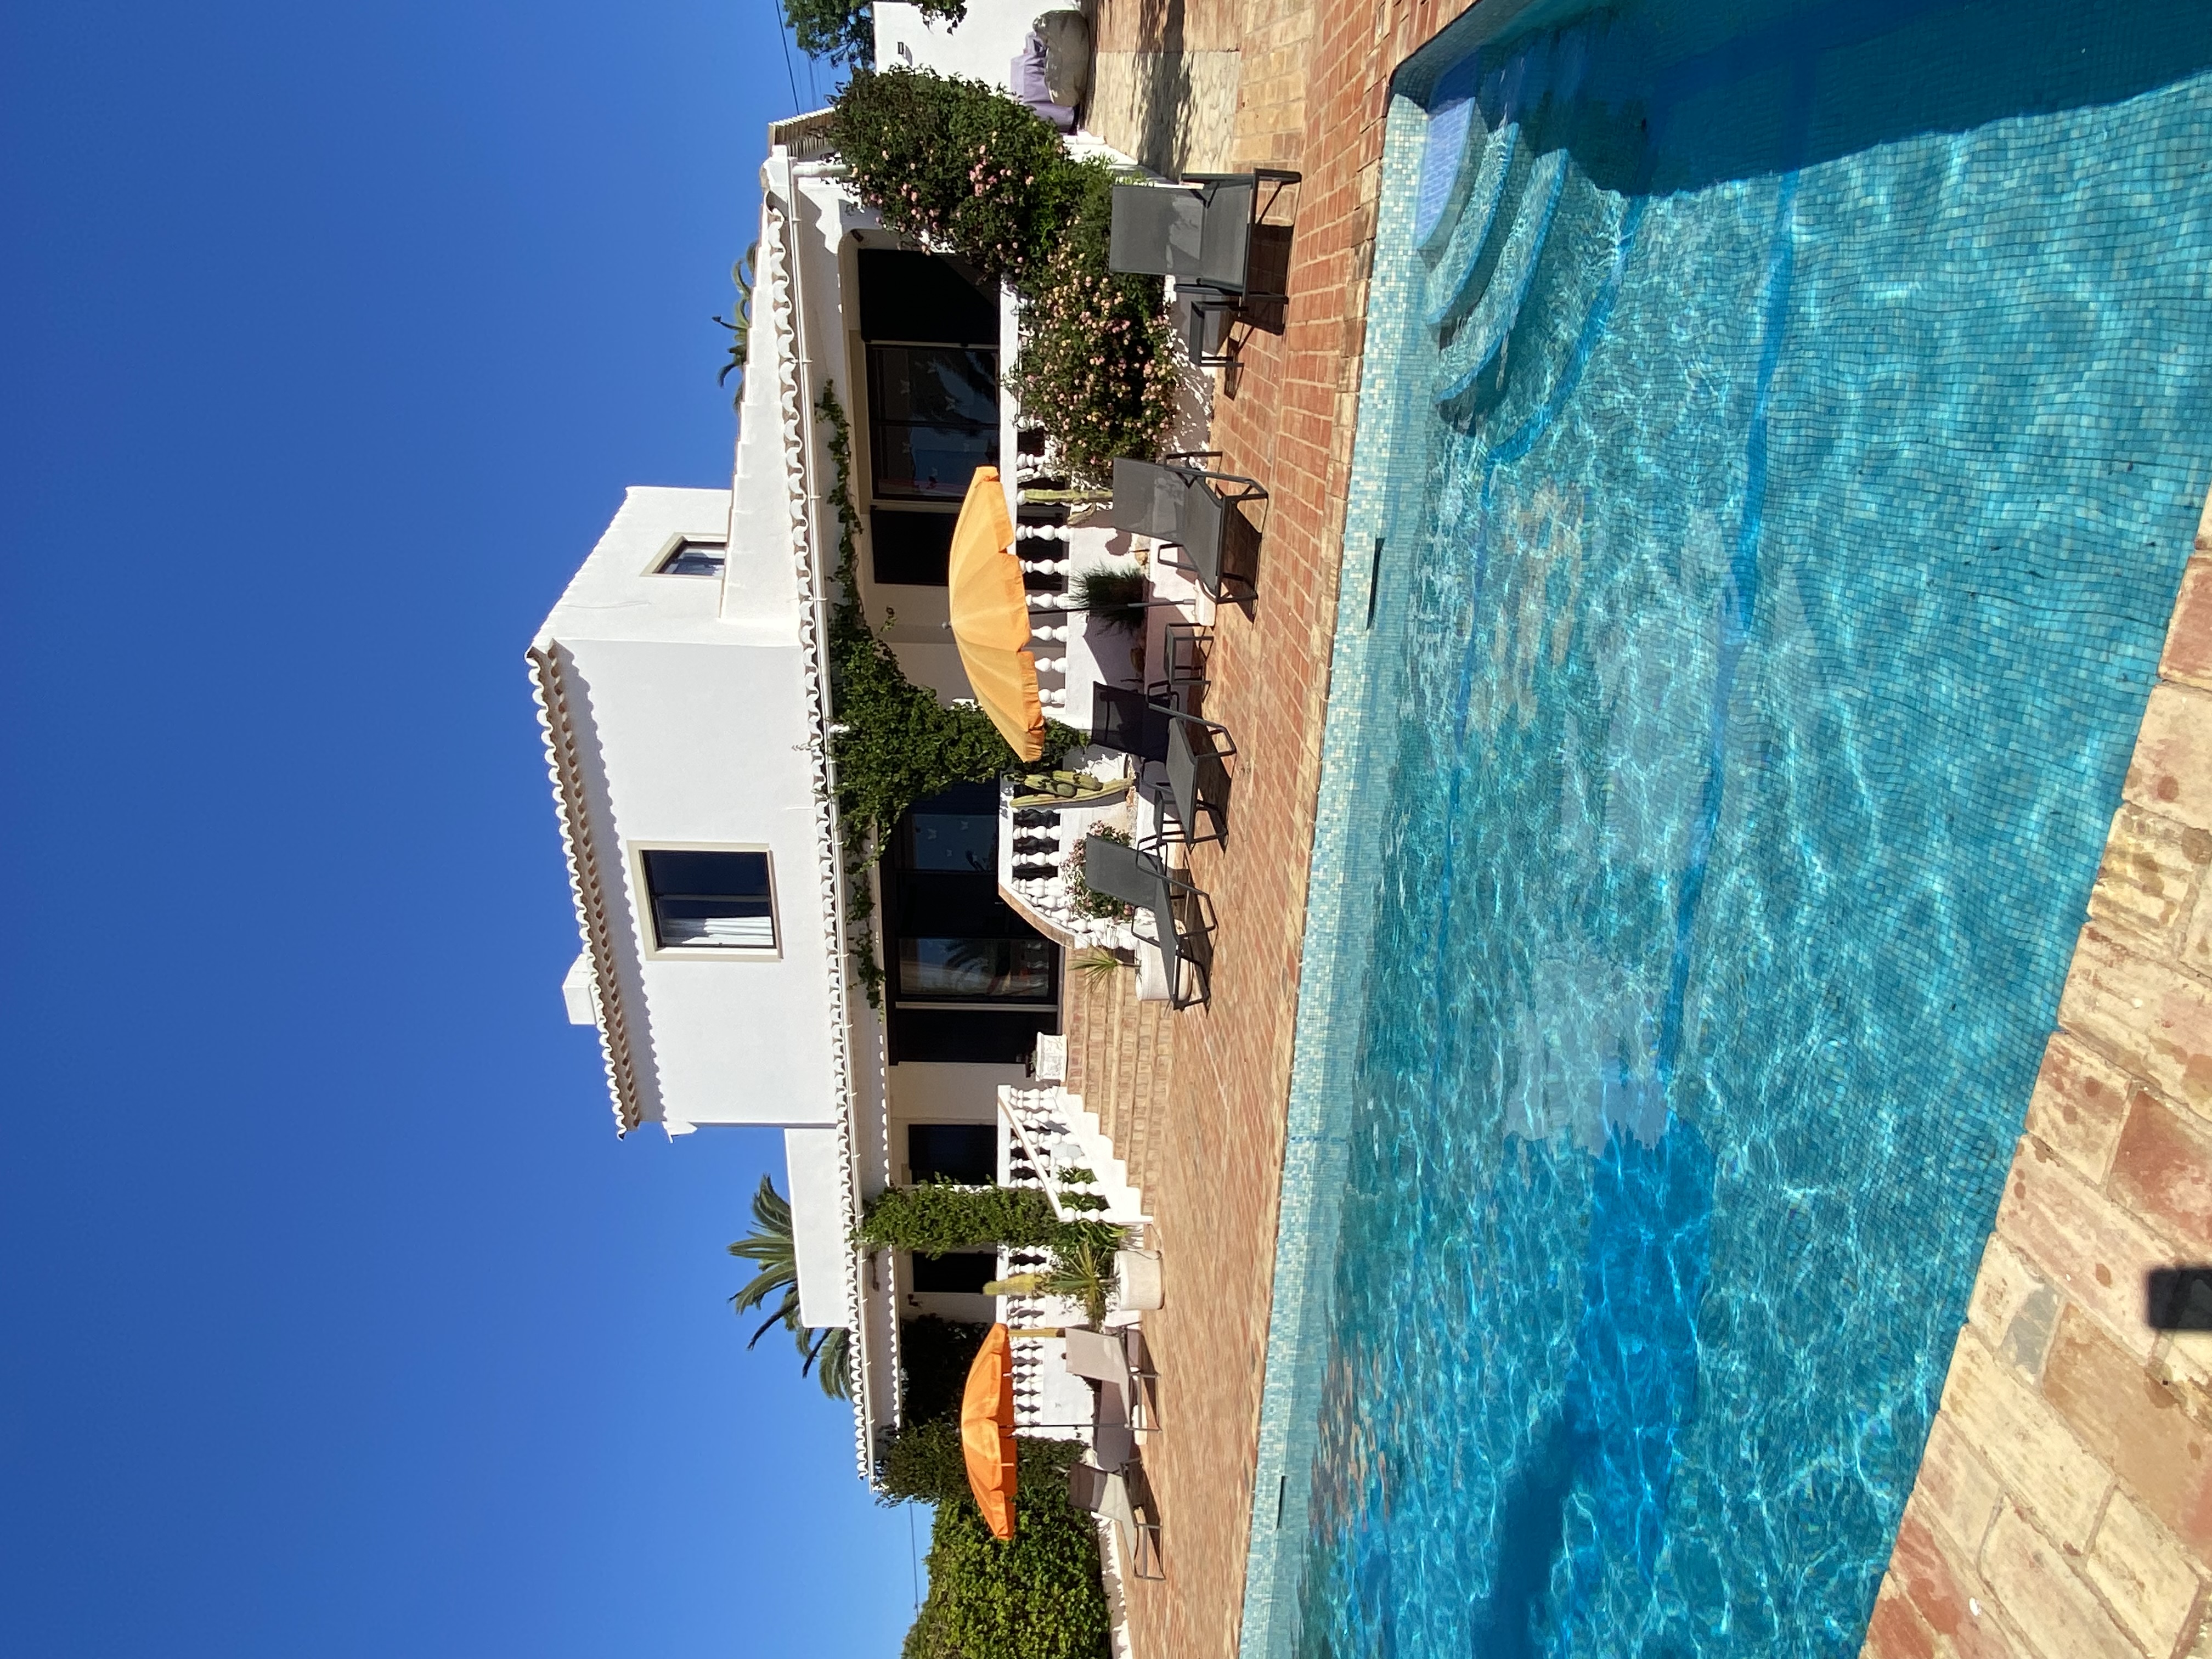 Traditional Portuguese Villa with pool near Burgau - Villas for Rent in  Burgau, Burgau, Portugal - Airbnb